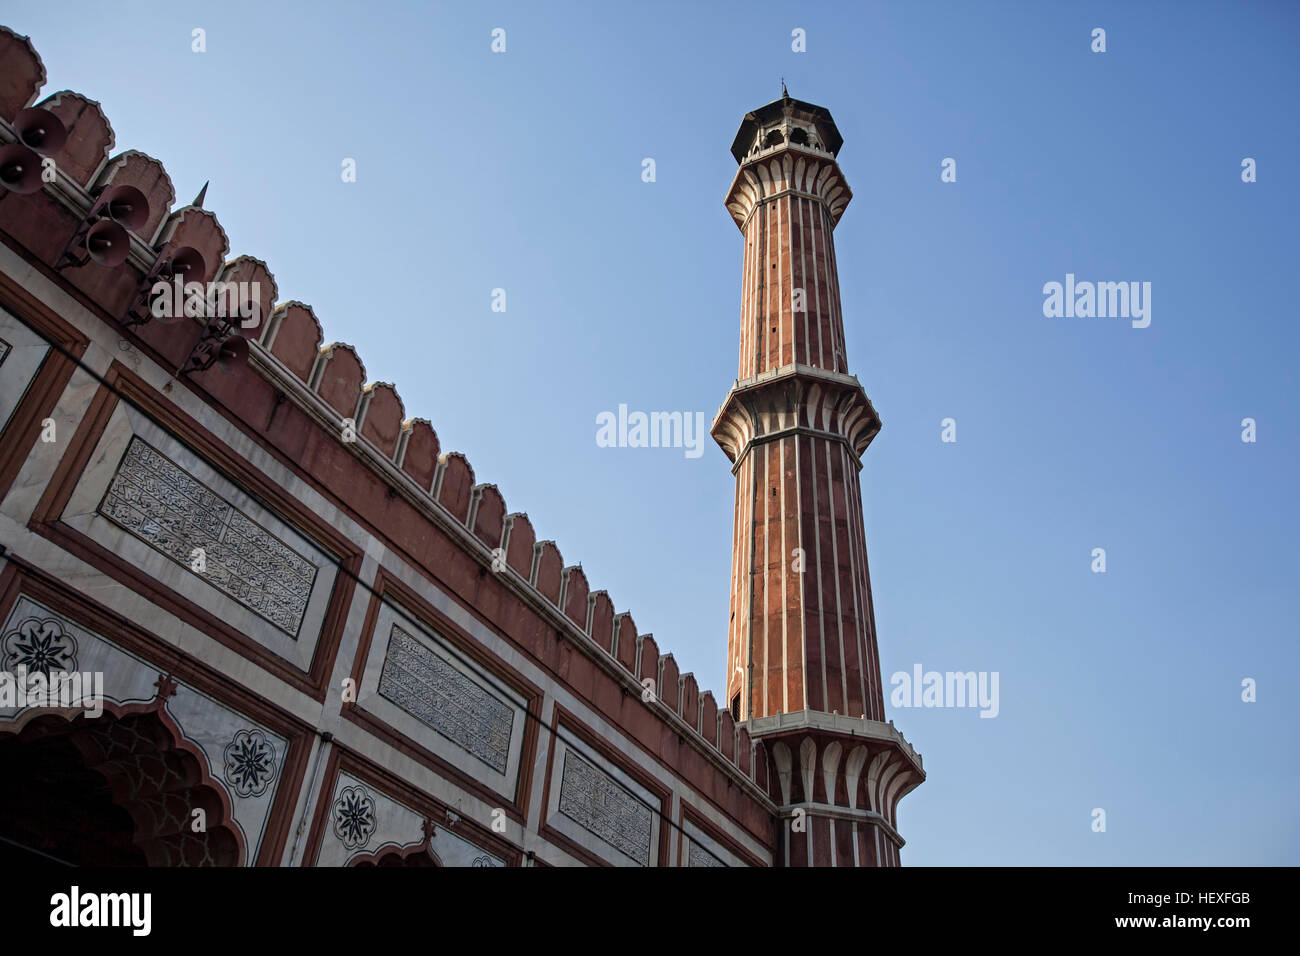 Minaret, mosquée Jama Masjid, Old Delhi, Inde Banque D'Images